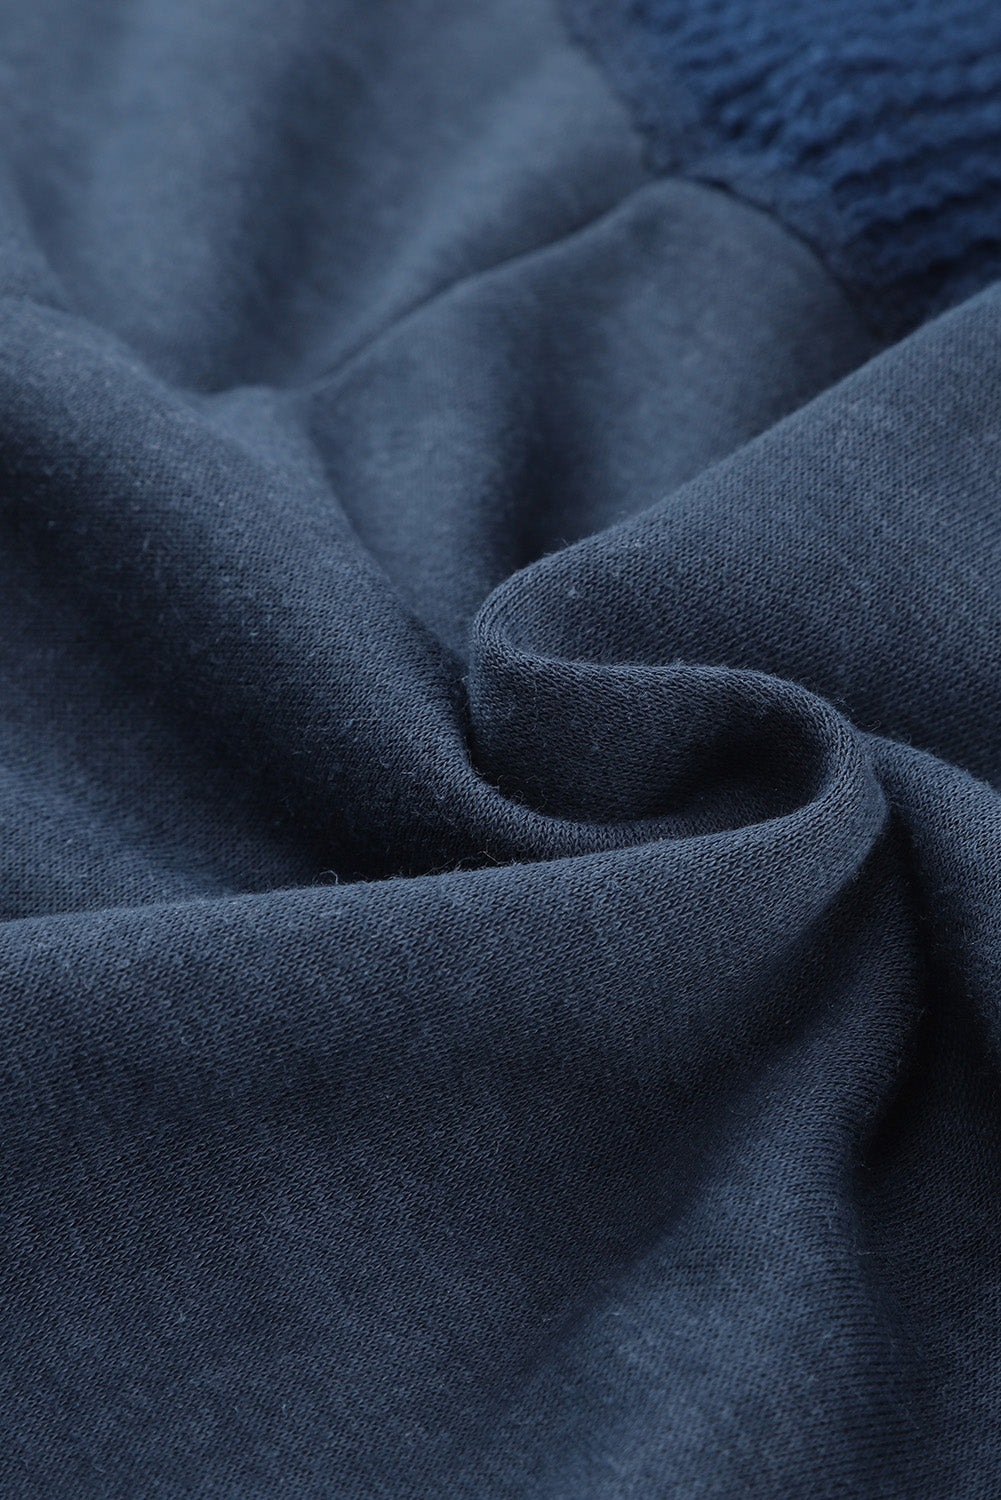 Blaue, verwaschene Vintage-Kapuzenjacke mit Waffel-Patchwork-Muster